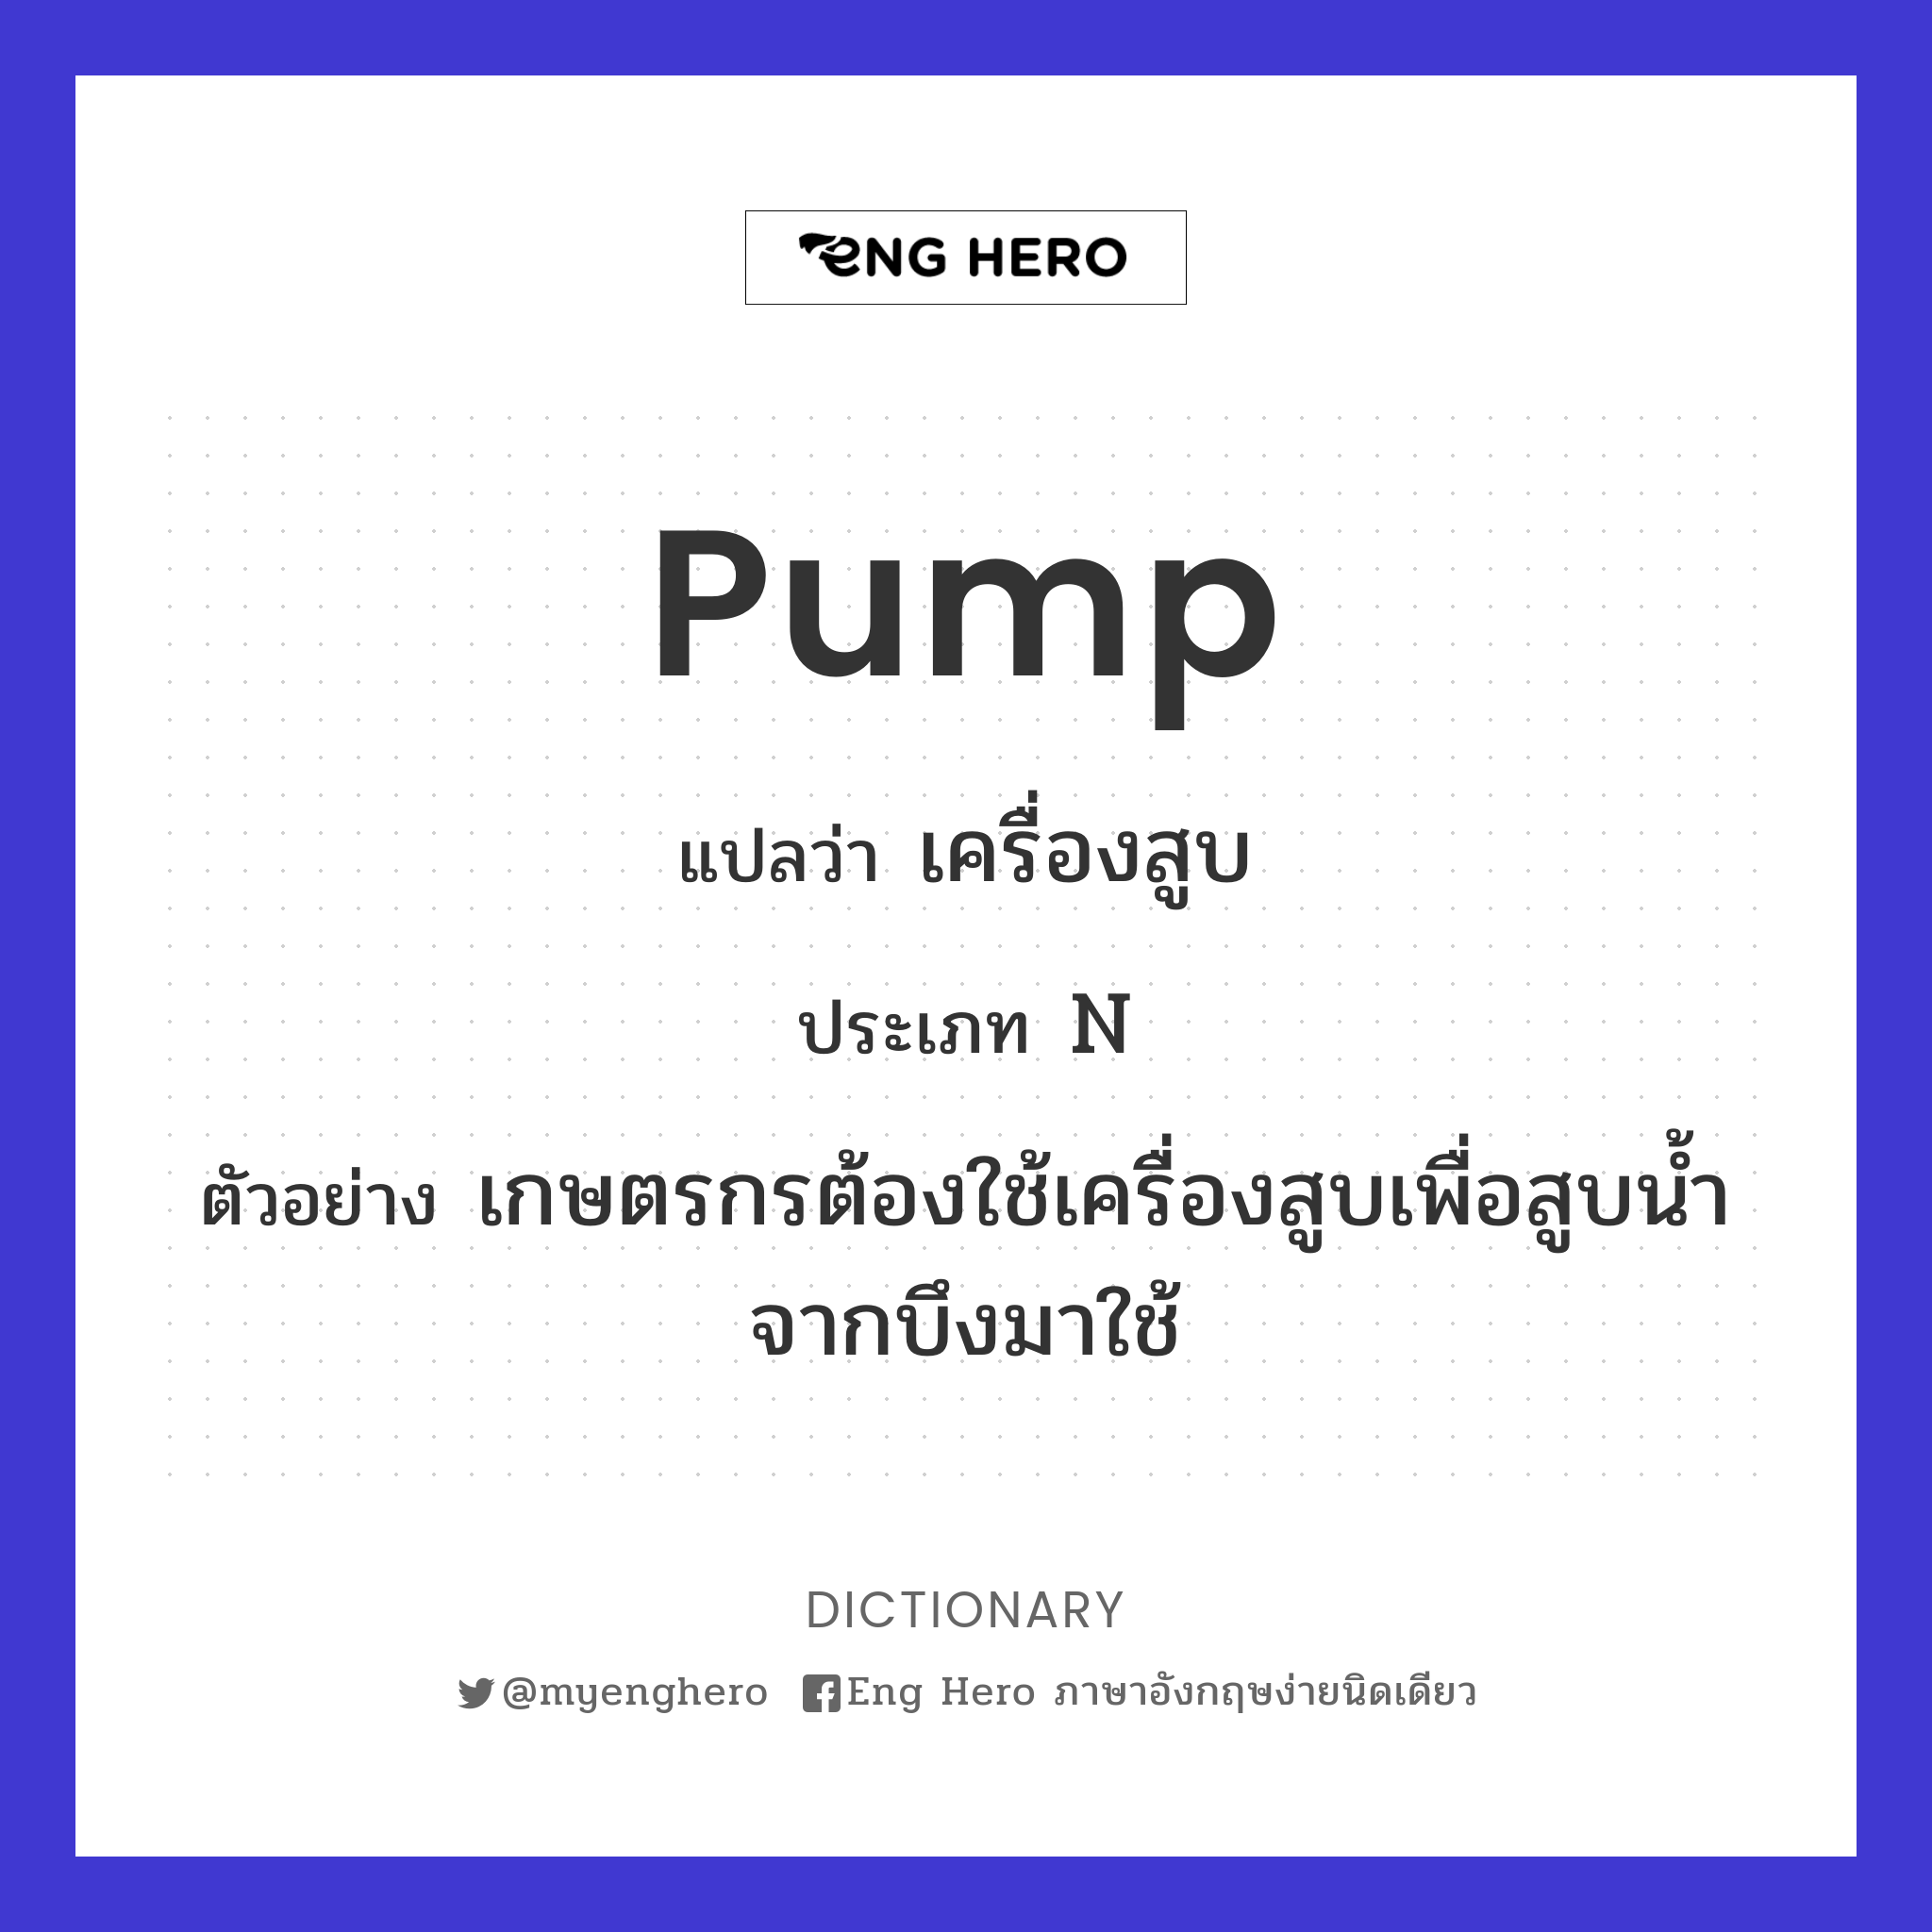 pump